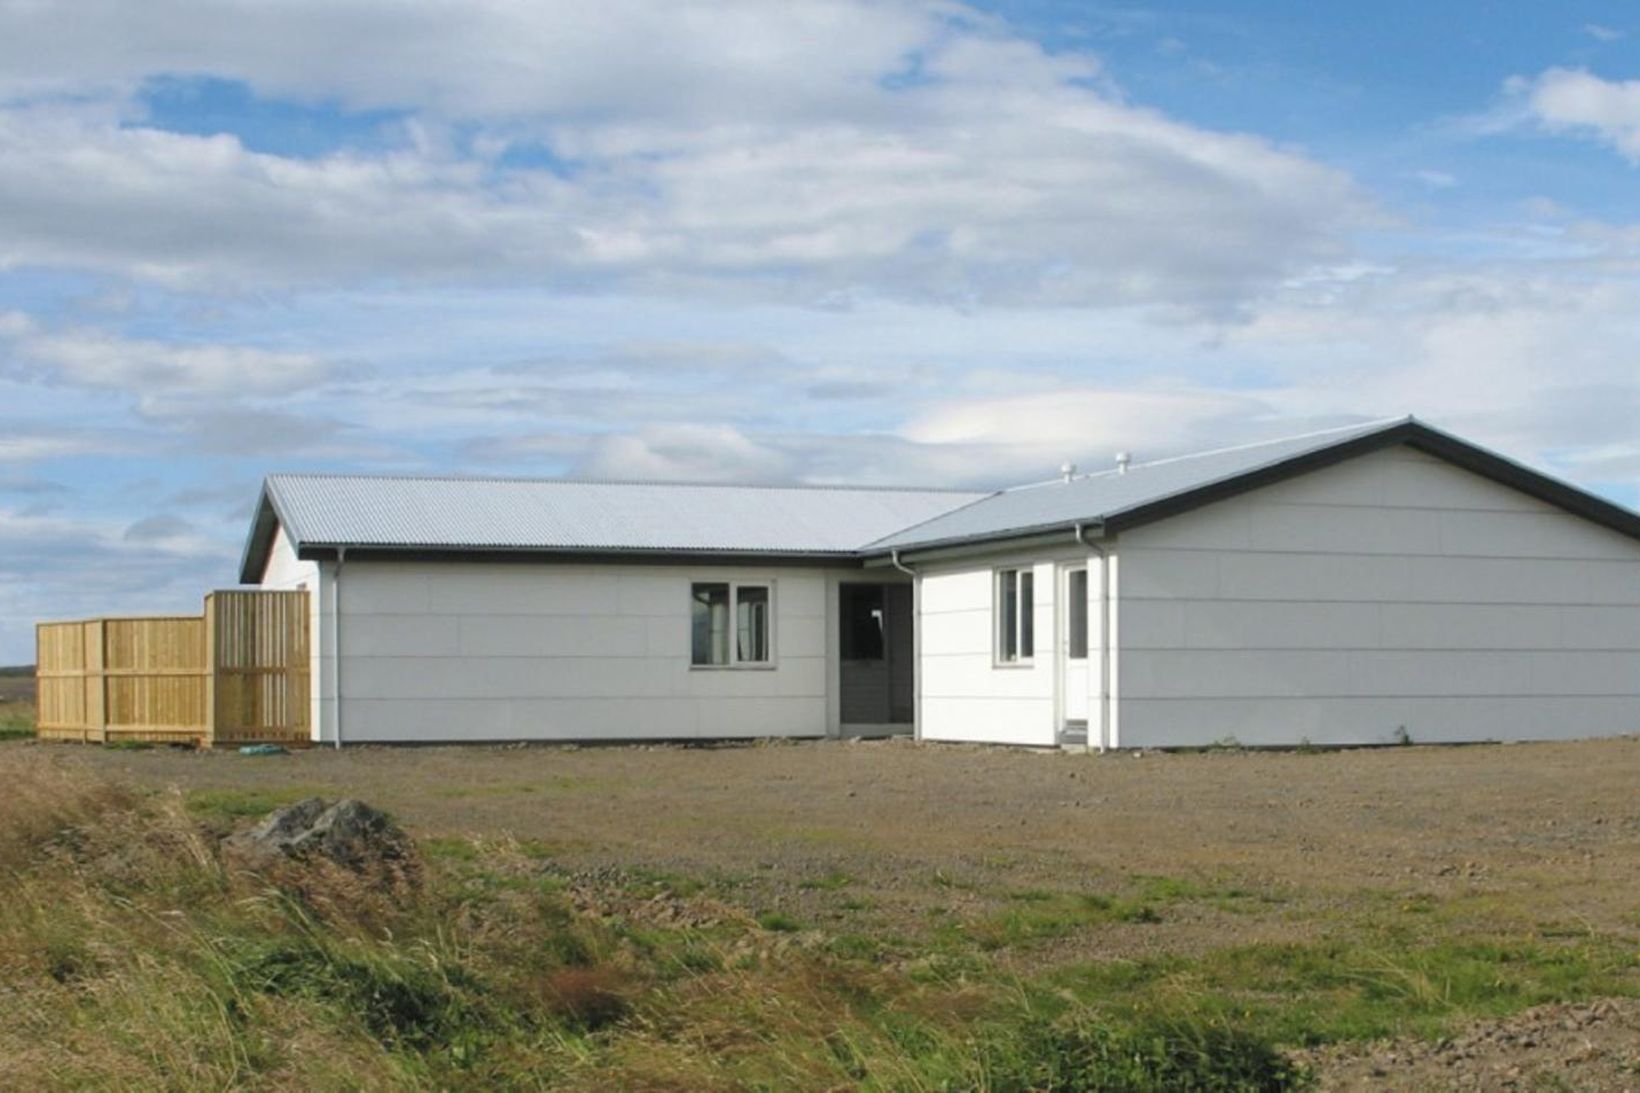 Bústaður Eflingar í Svignaskarði.